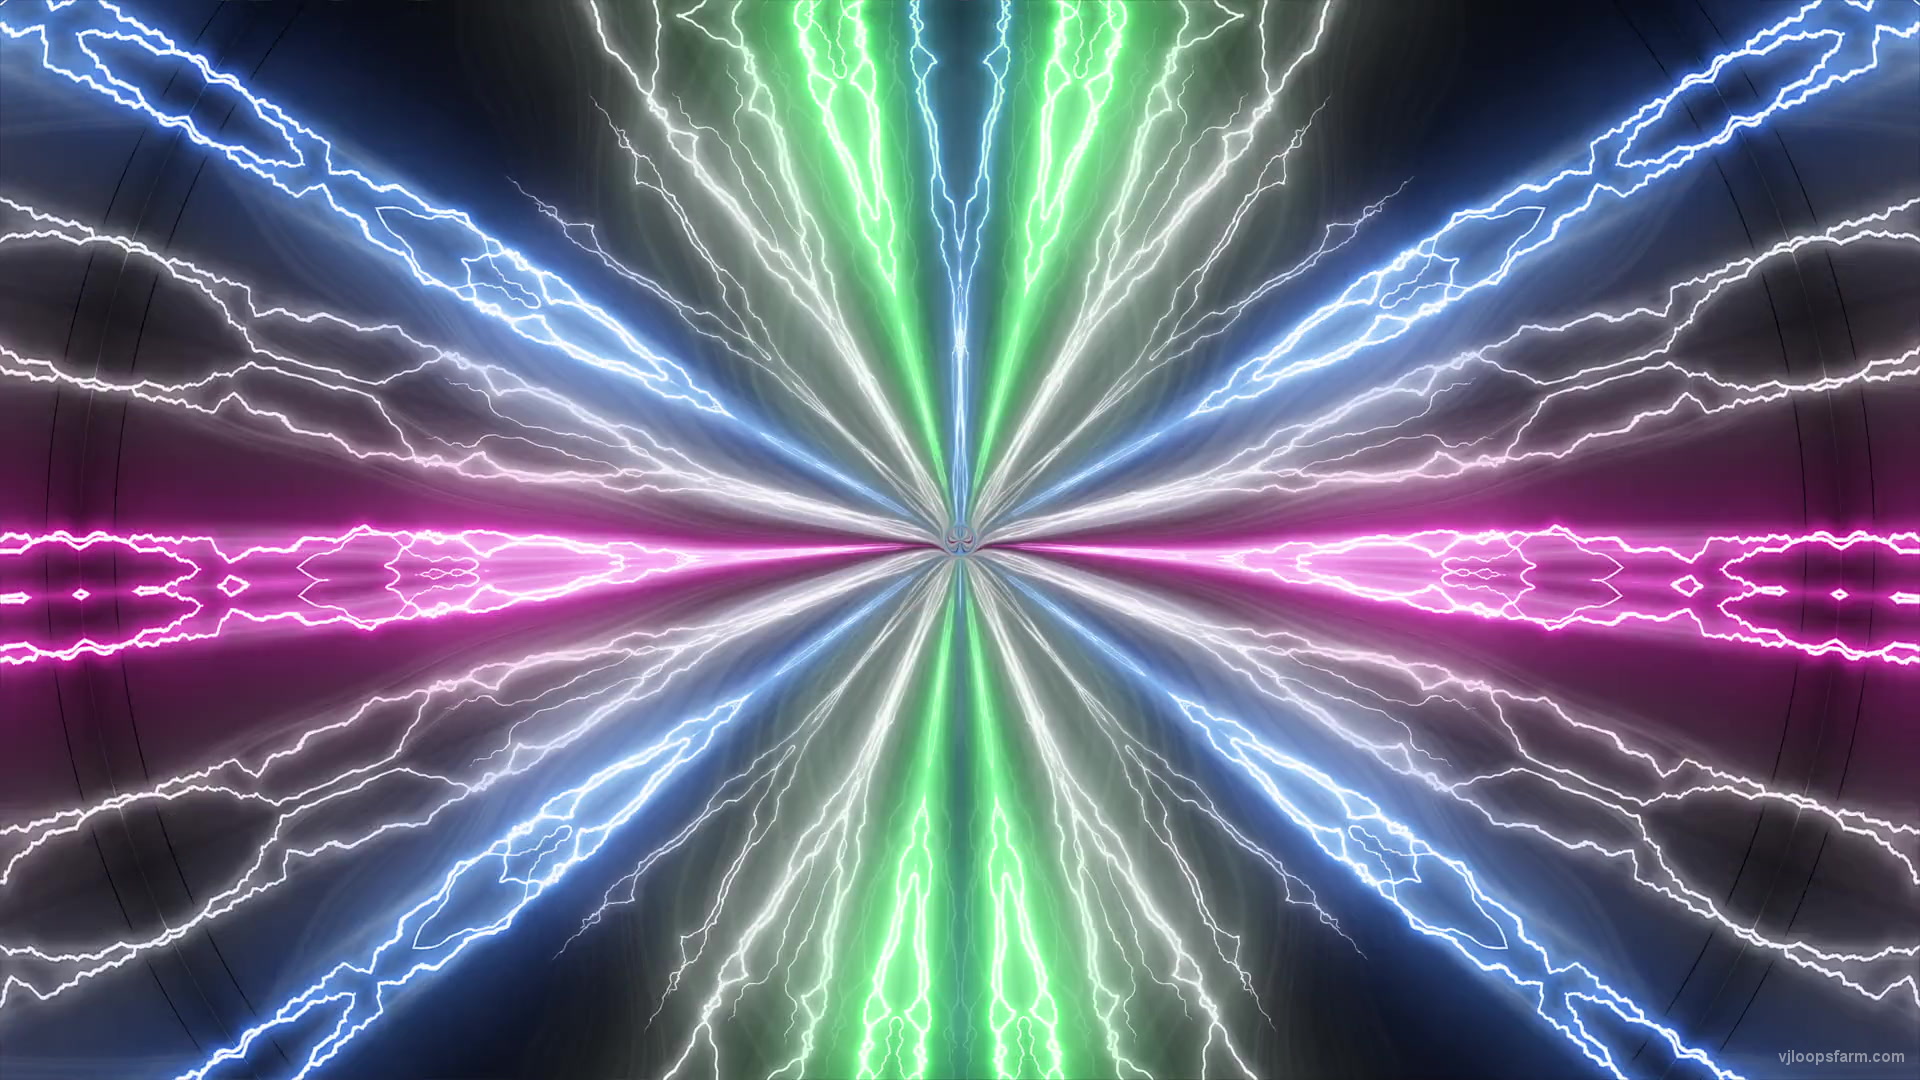 Gnosis-Abstract-Lightning-beats-PSY-Star-Shoot-Ultra-HD-Video-Art-loop-VJ-Clip-ralcet-1920_007 VJ Loops Farm